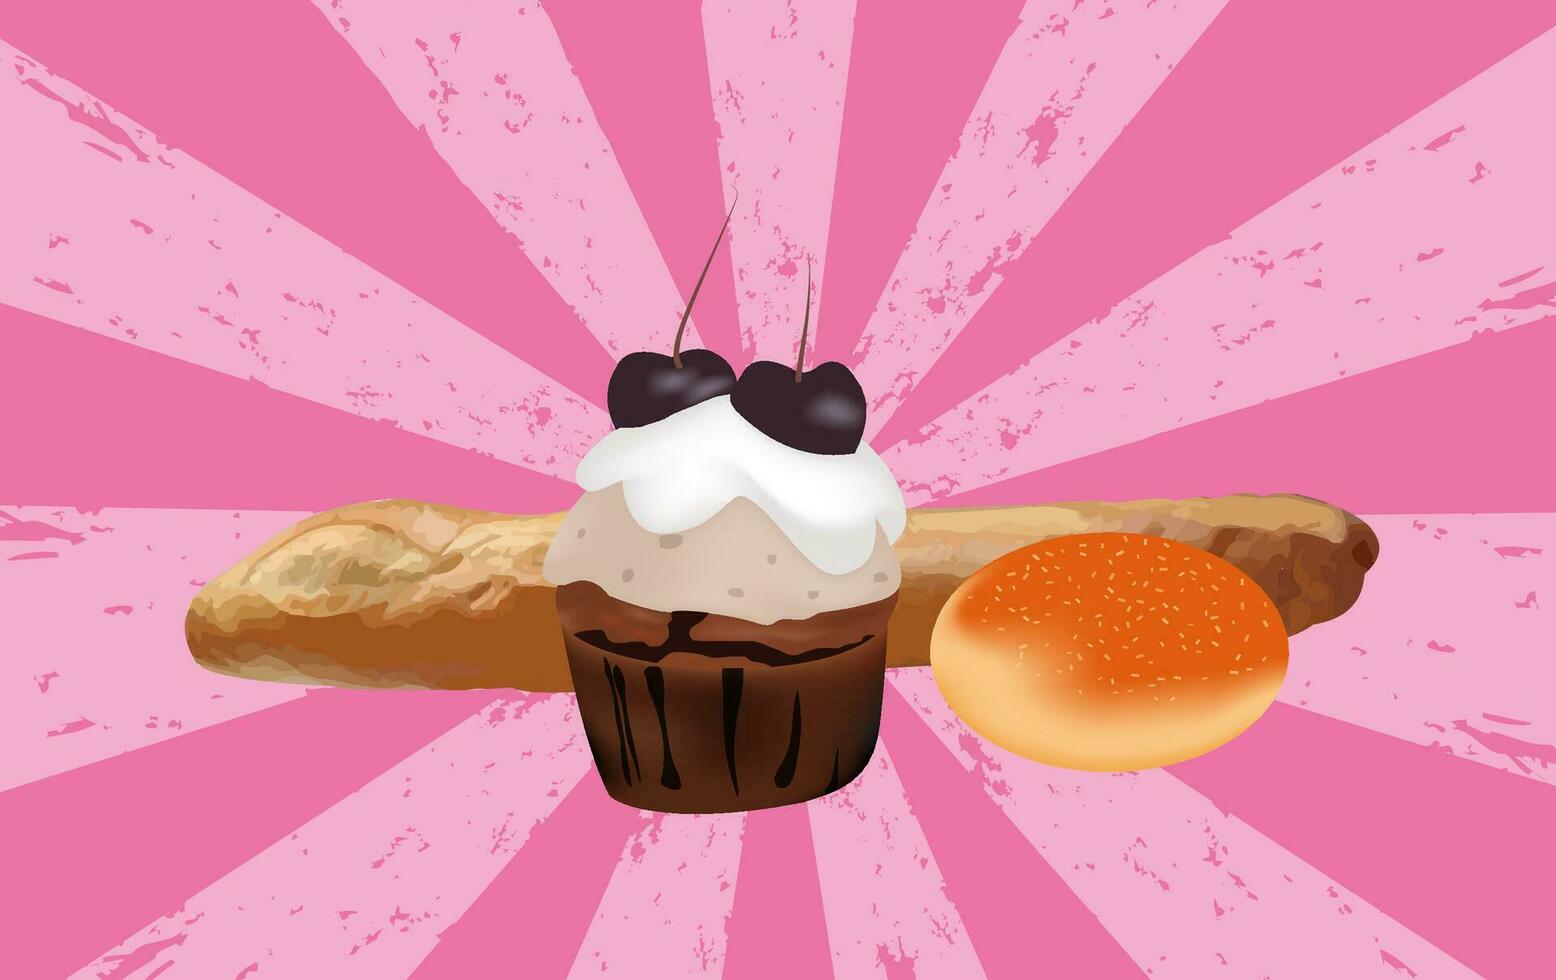 muffin bageri reklam dekoration begrepp handla om marknadsföring, rabatter, bröd Produkter. design t-shirts, flygblad, inbjudningar, hälsning kort, skriva ut material, illustrationer, vektorer. vektor